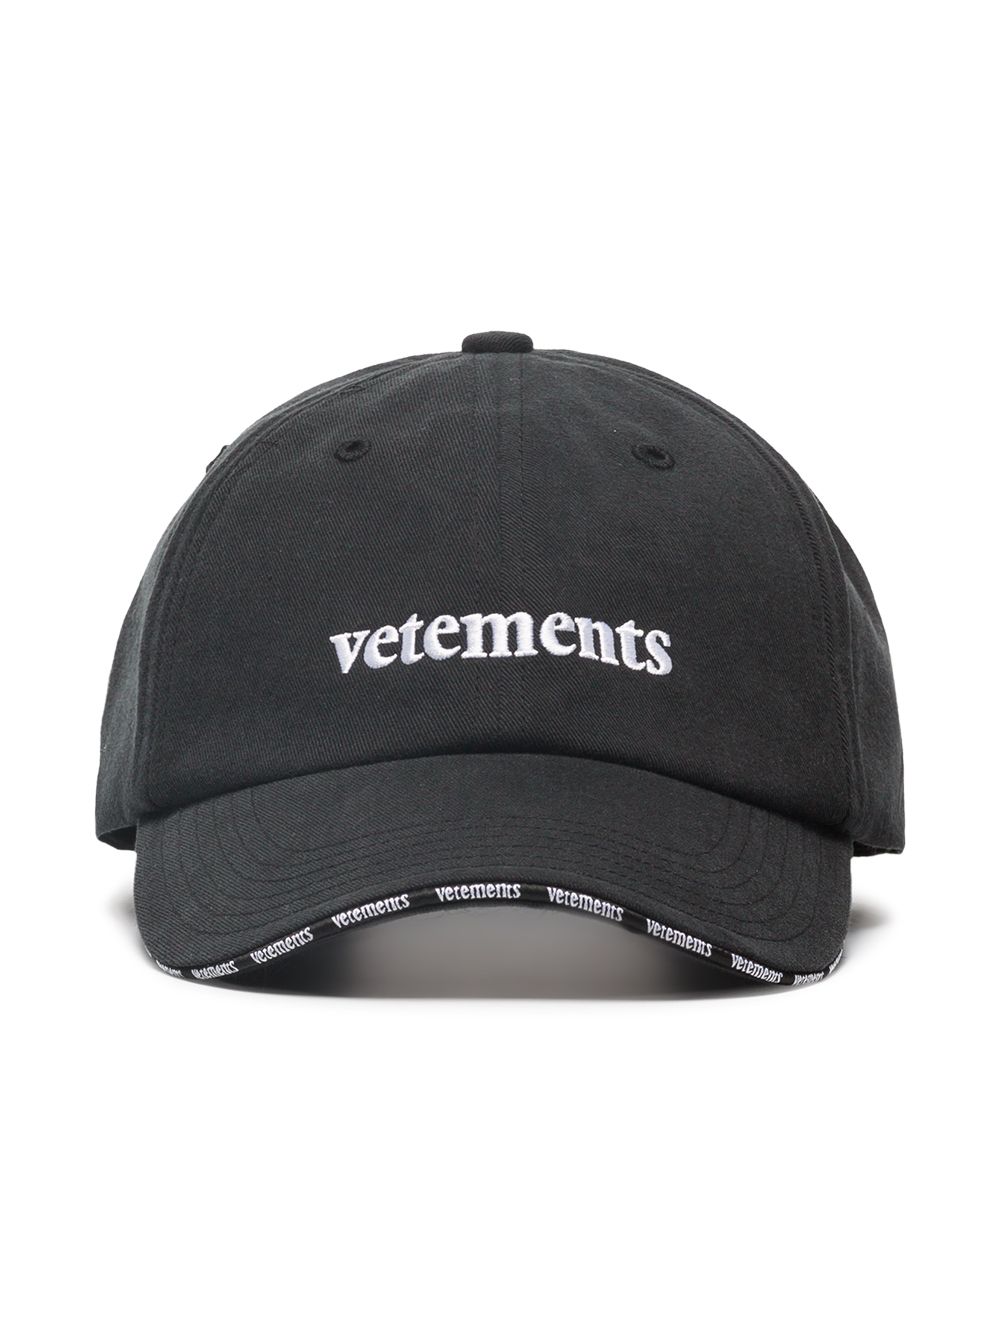 фото Vetements кепка с вышитым логотипом